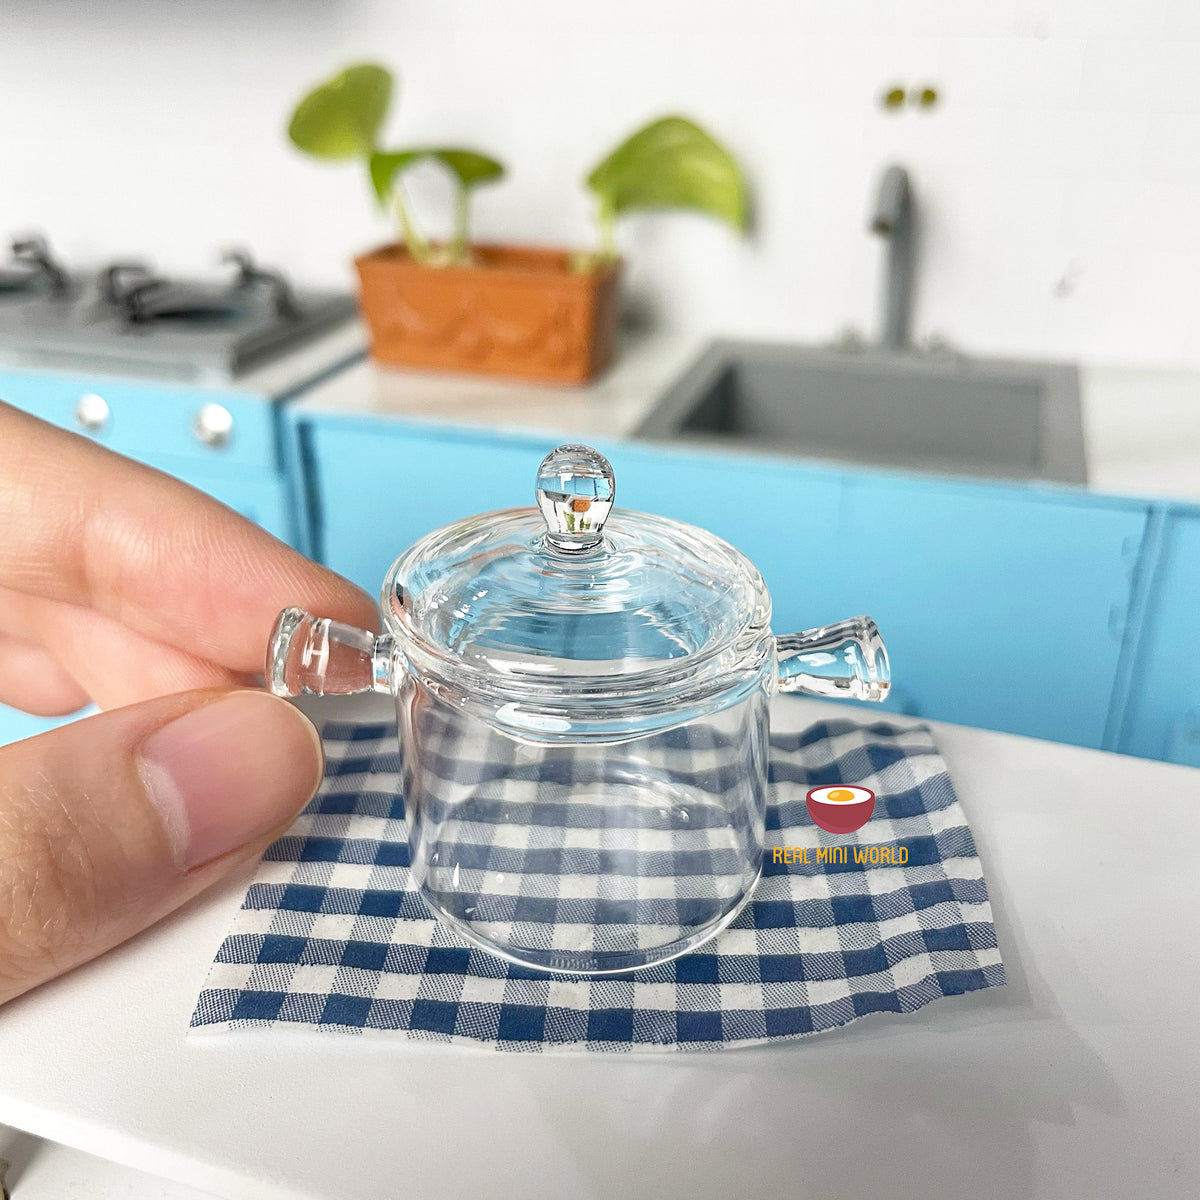 Miniature Korean Cooking Stew Pot : cook tiny edible food – Real